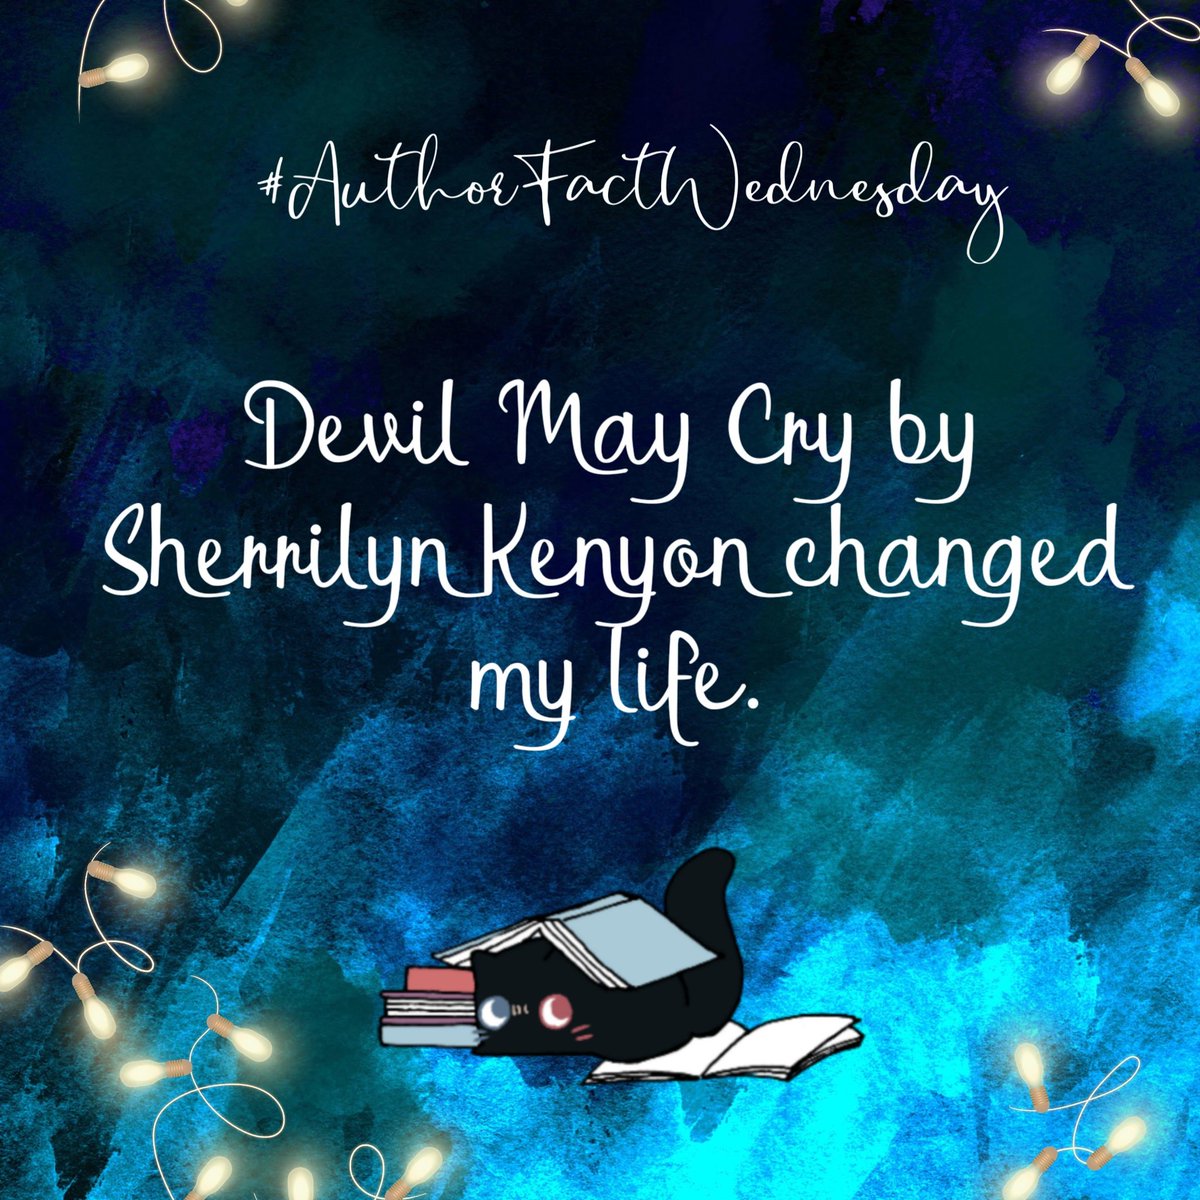 #authorlife #AuthorFactWednesday #facts #favoriteauthor #darkhunters #sherrilynkenyon